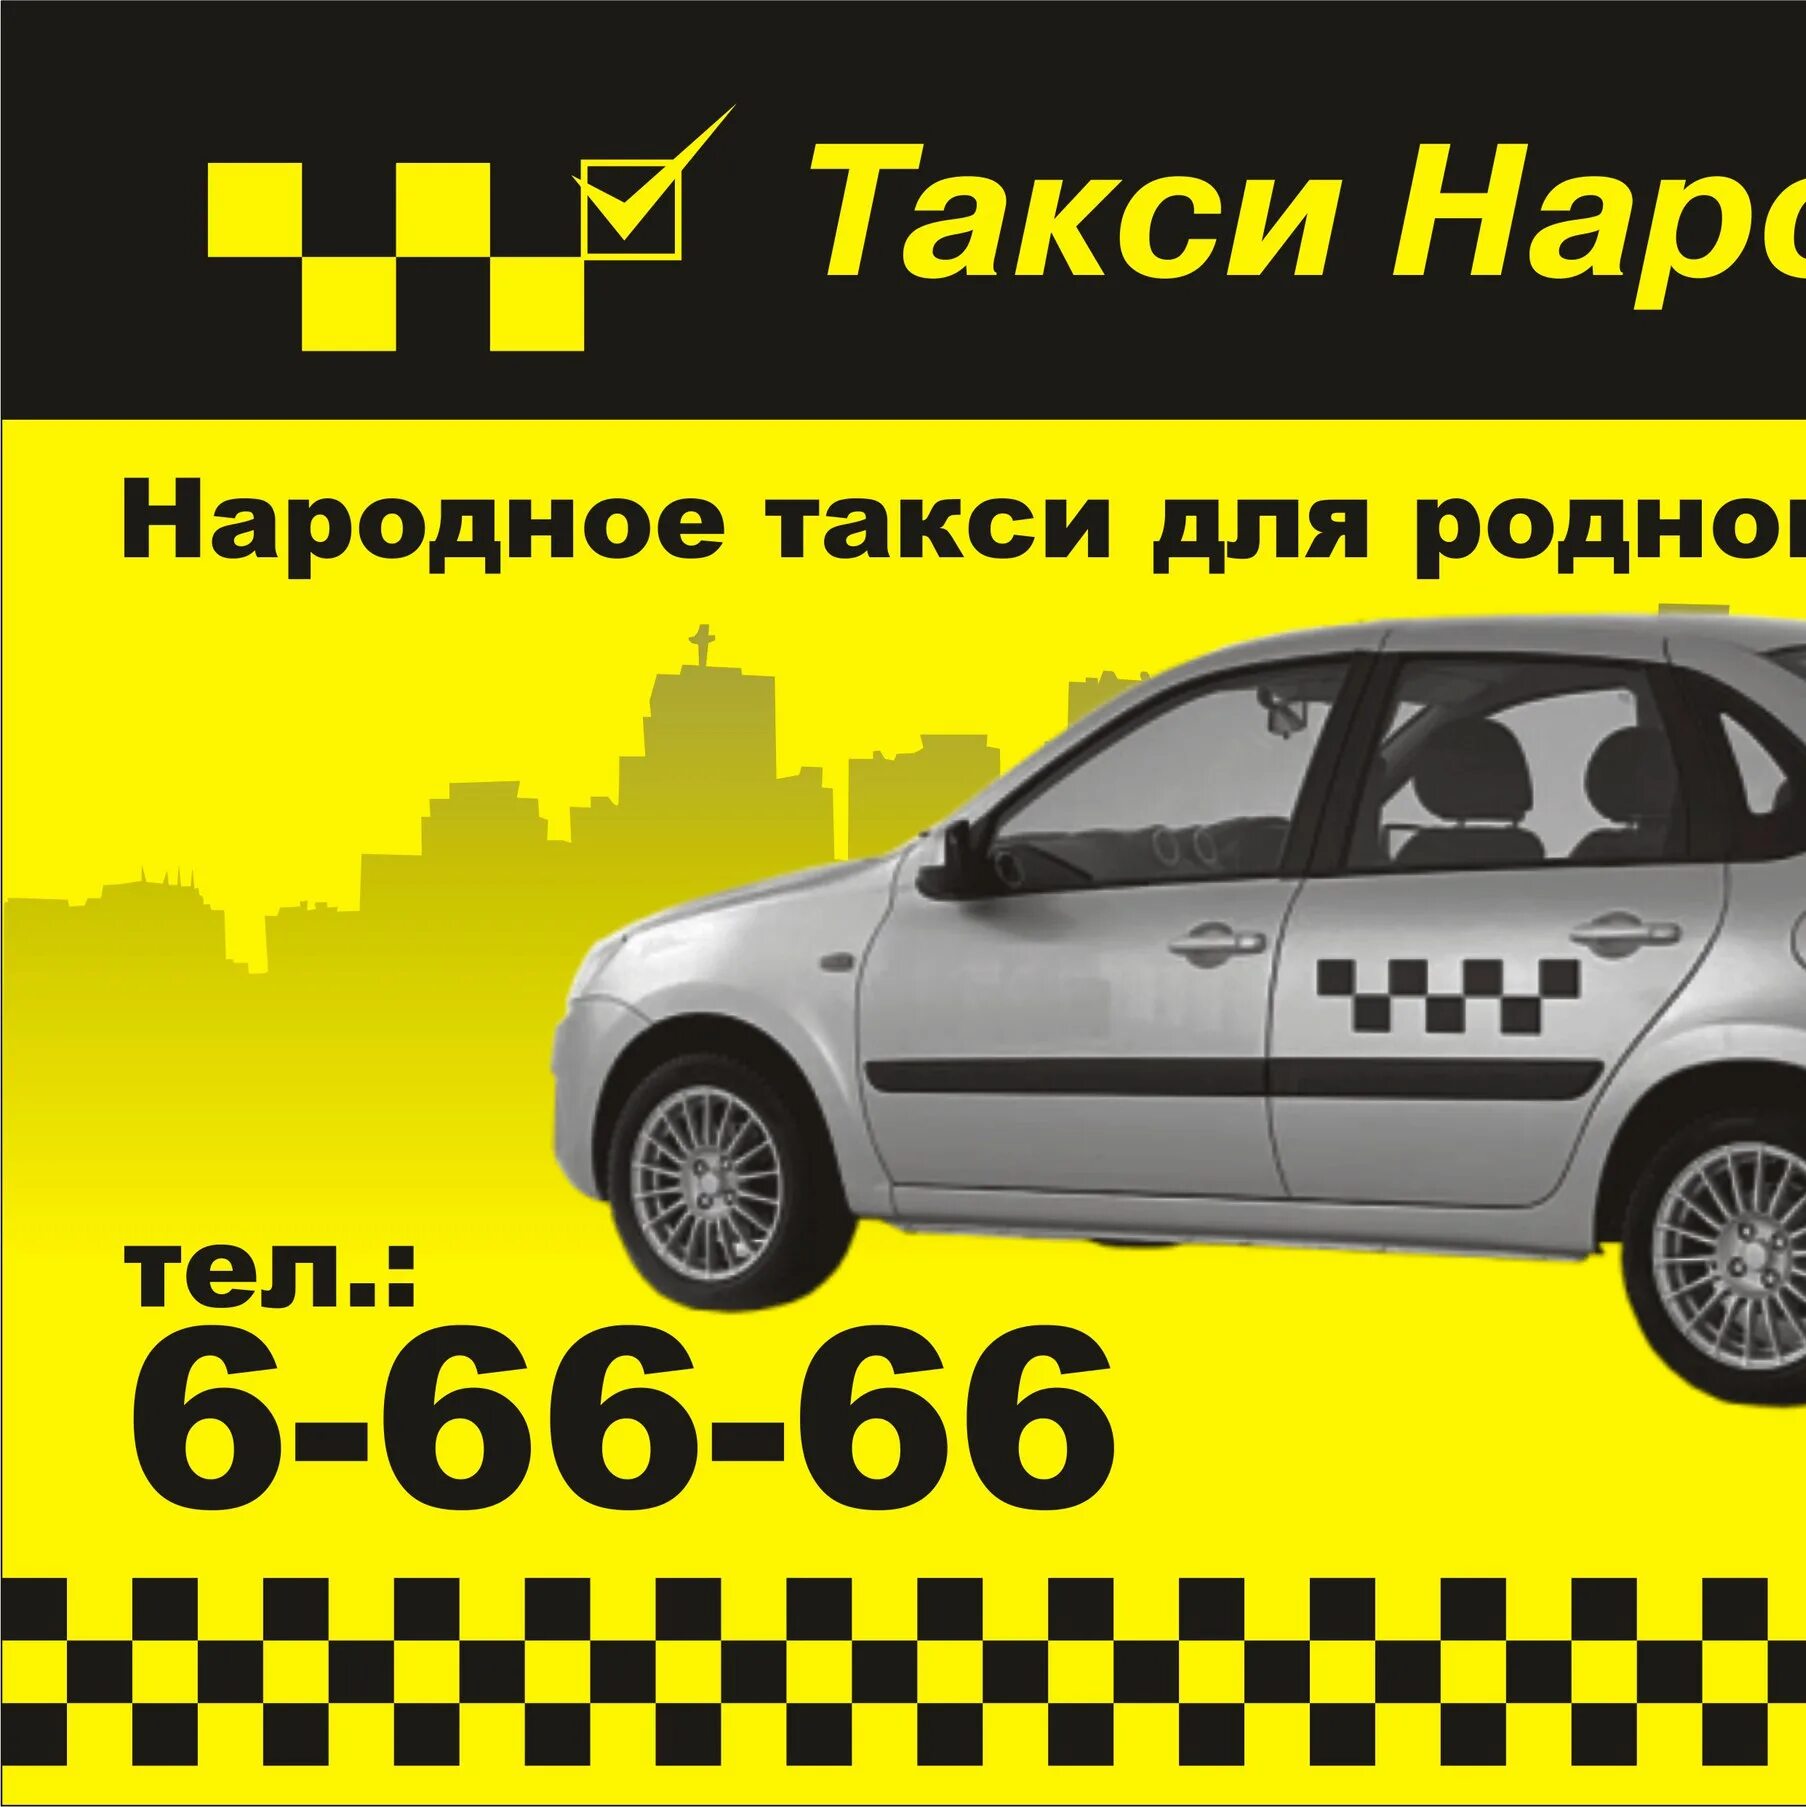 Номер телефона такси народное. Народное такси. Народное такси номер. Такси народное Октябрьский. Такси народное Рыбное.